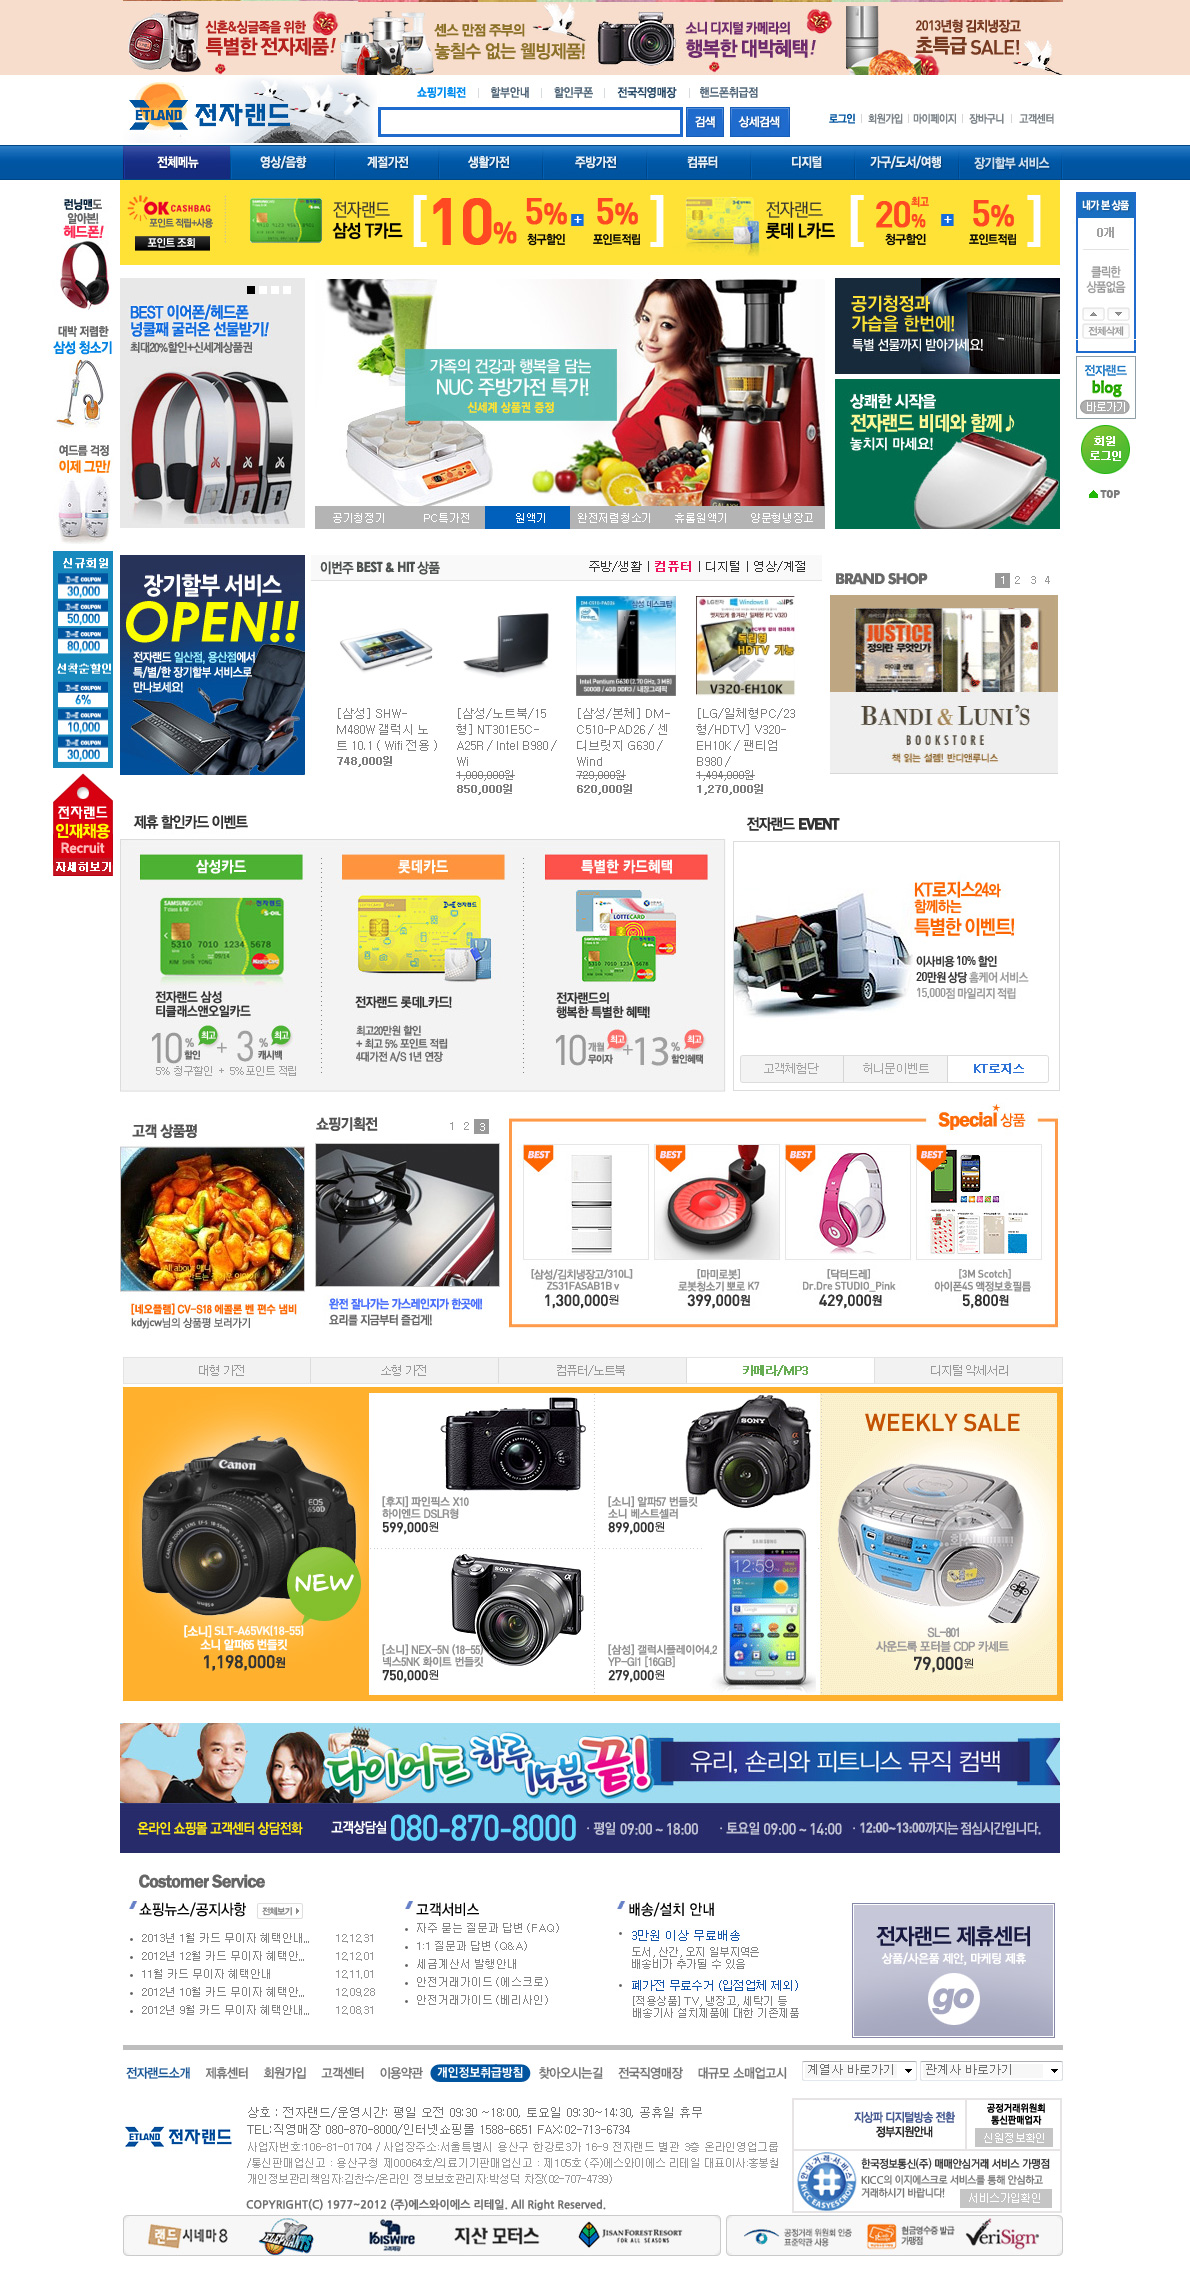 ETLAND是韩国数码、电器的购物网站。